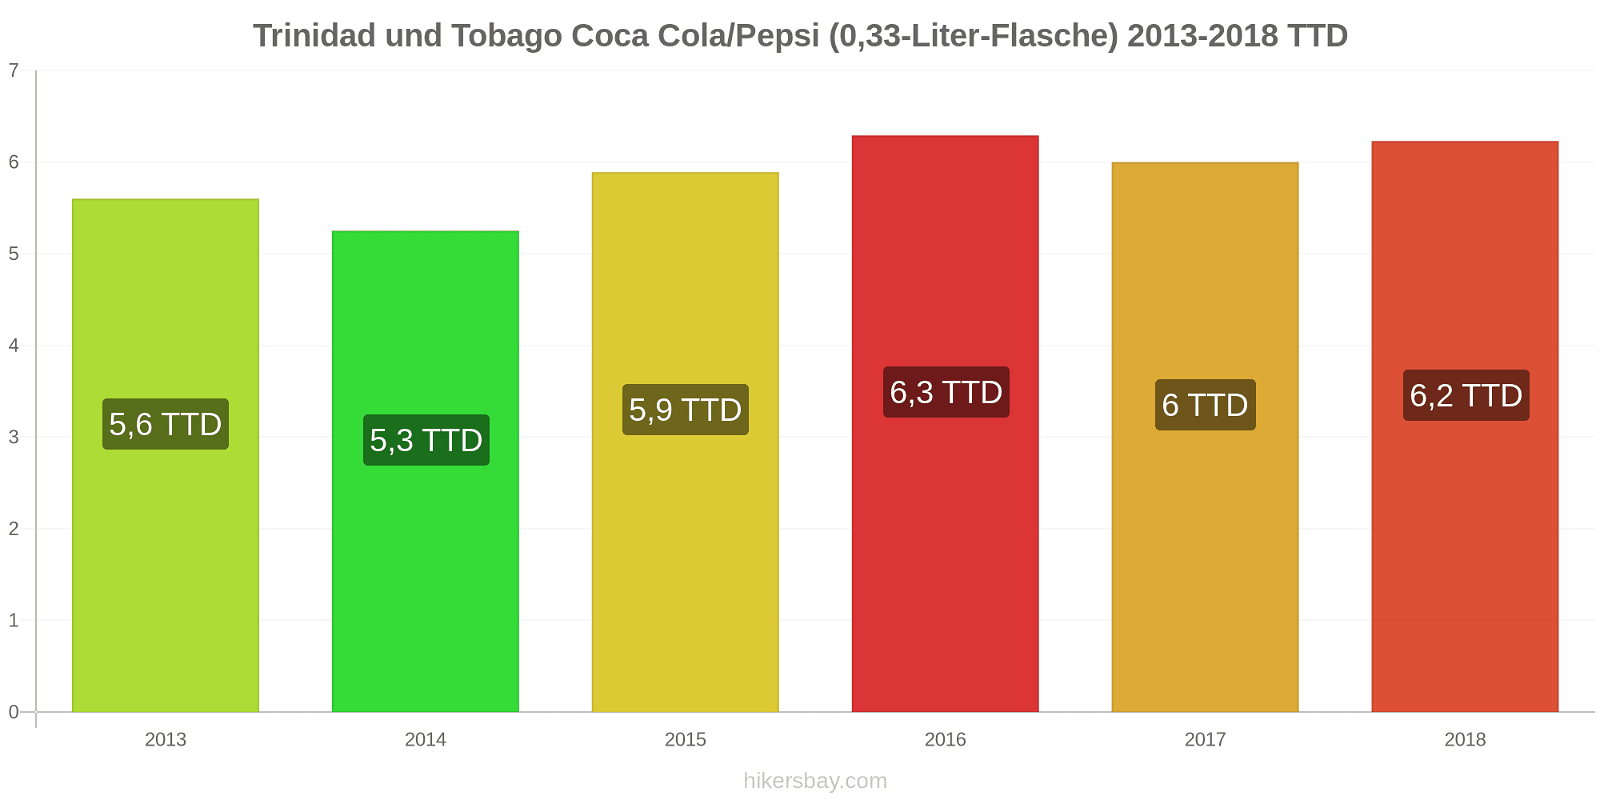 Trinidad und Tobago Preisänderungen Coke/Pepsi (0,33-Liter-Flasche) hikersbay.com